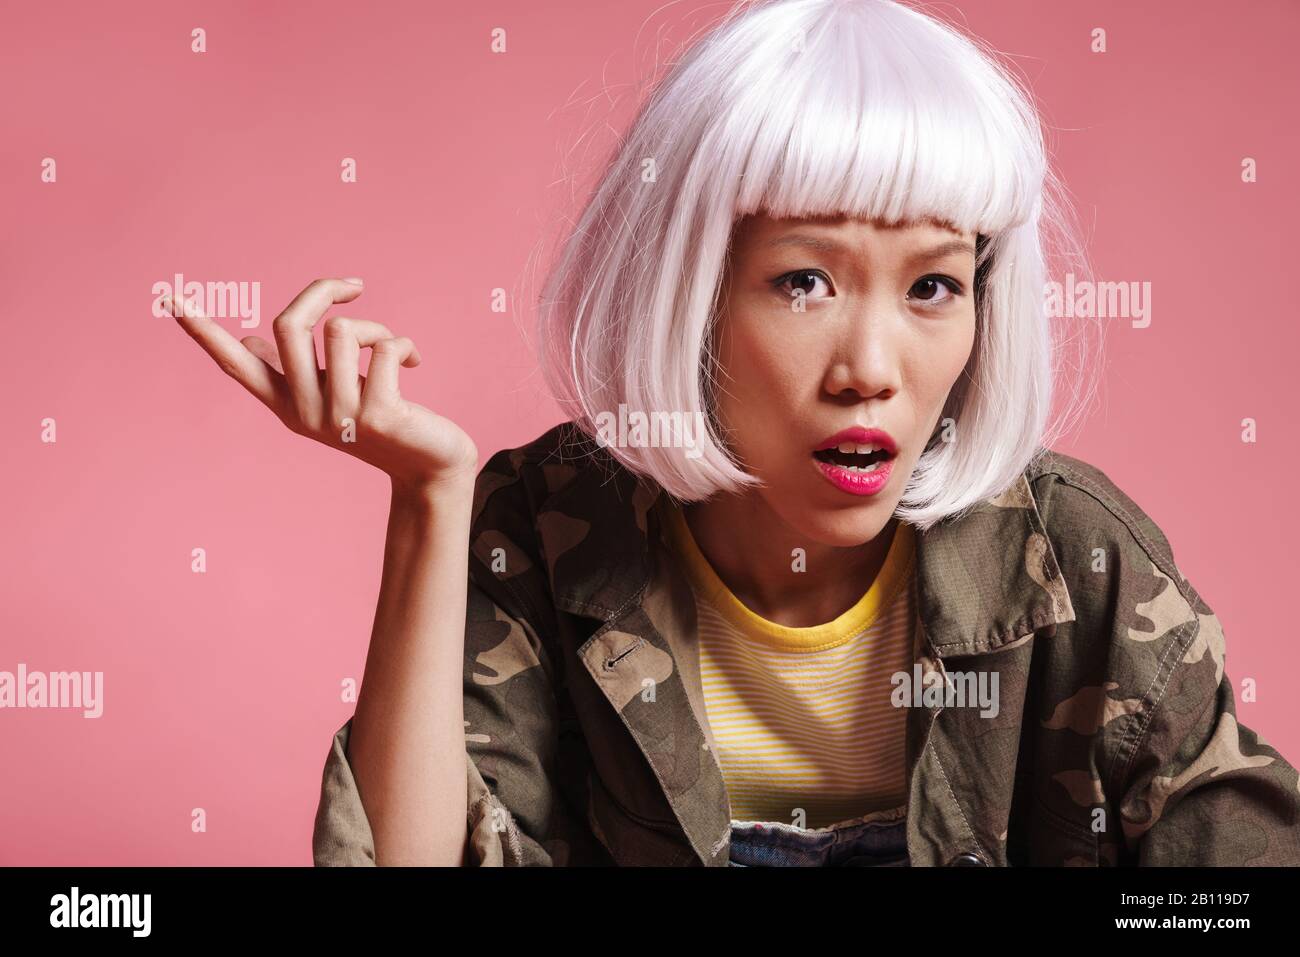 Bild eines empörten asiatischen Mädchens, das weiße Perücke trägt, die in der Empörung über rosafarbenem Hintergrund verärgt und gestikuliert wurde Stockfoto